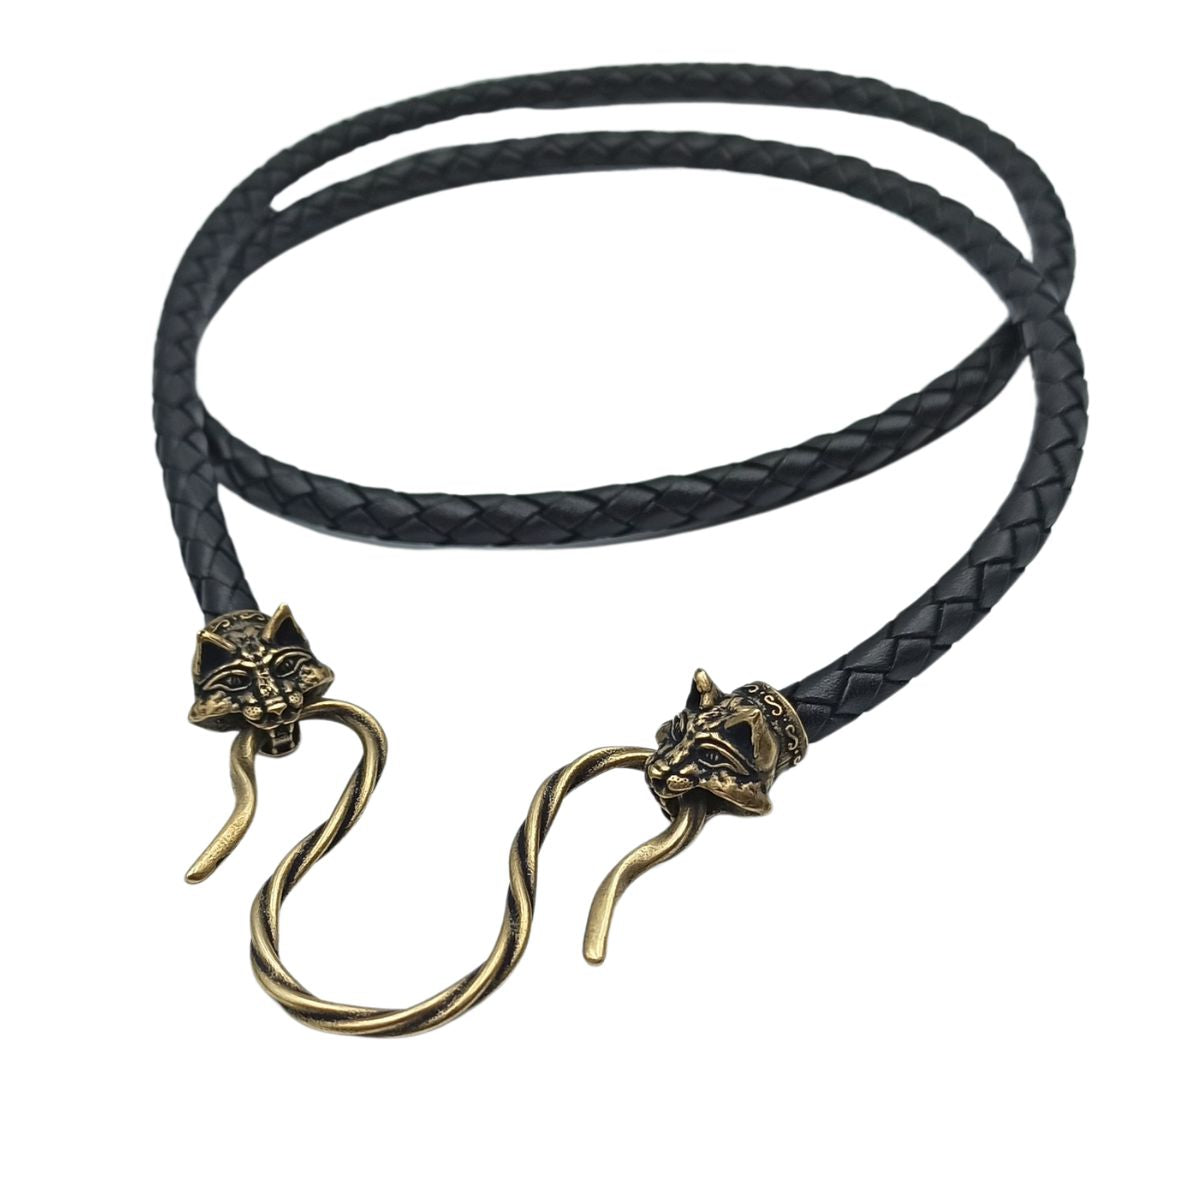 Lynx Men's Braided Leather Bracelet